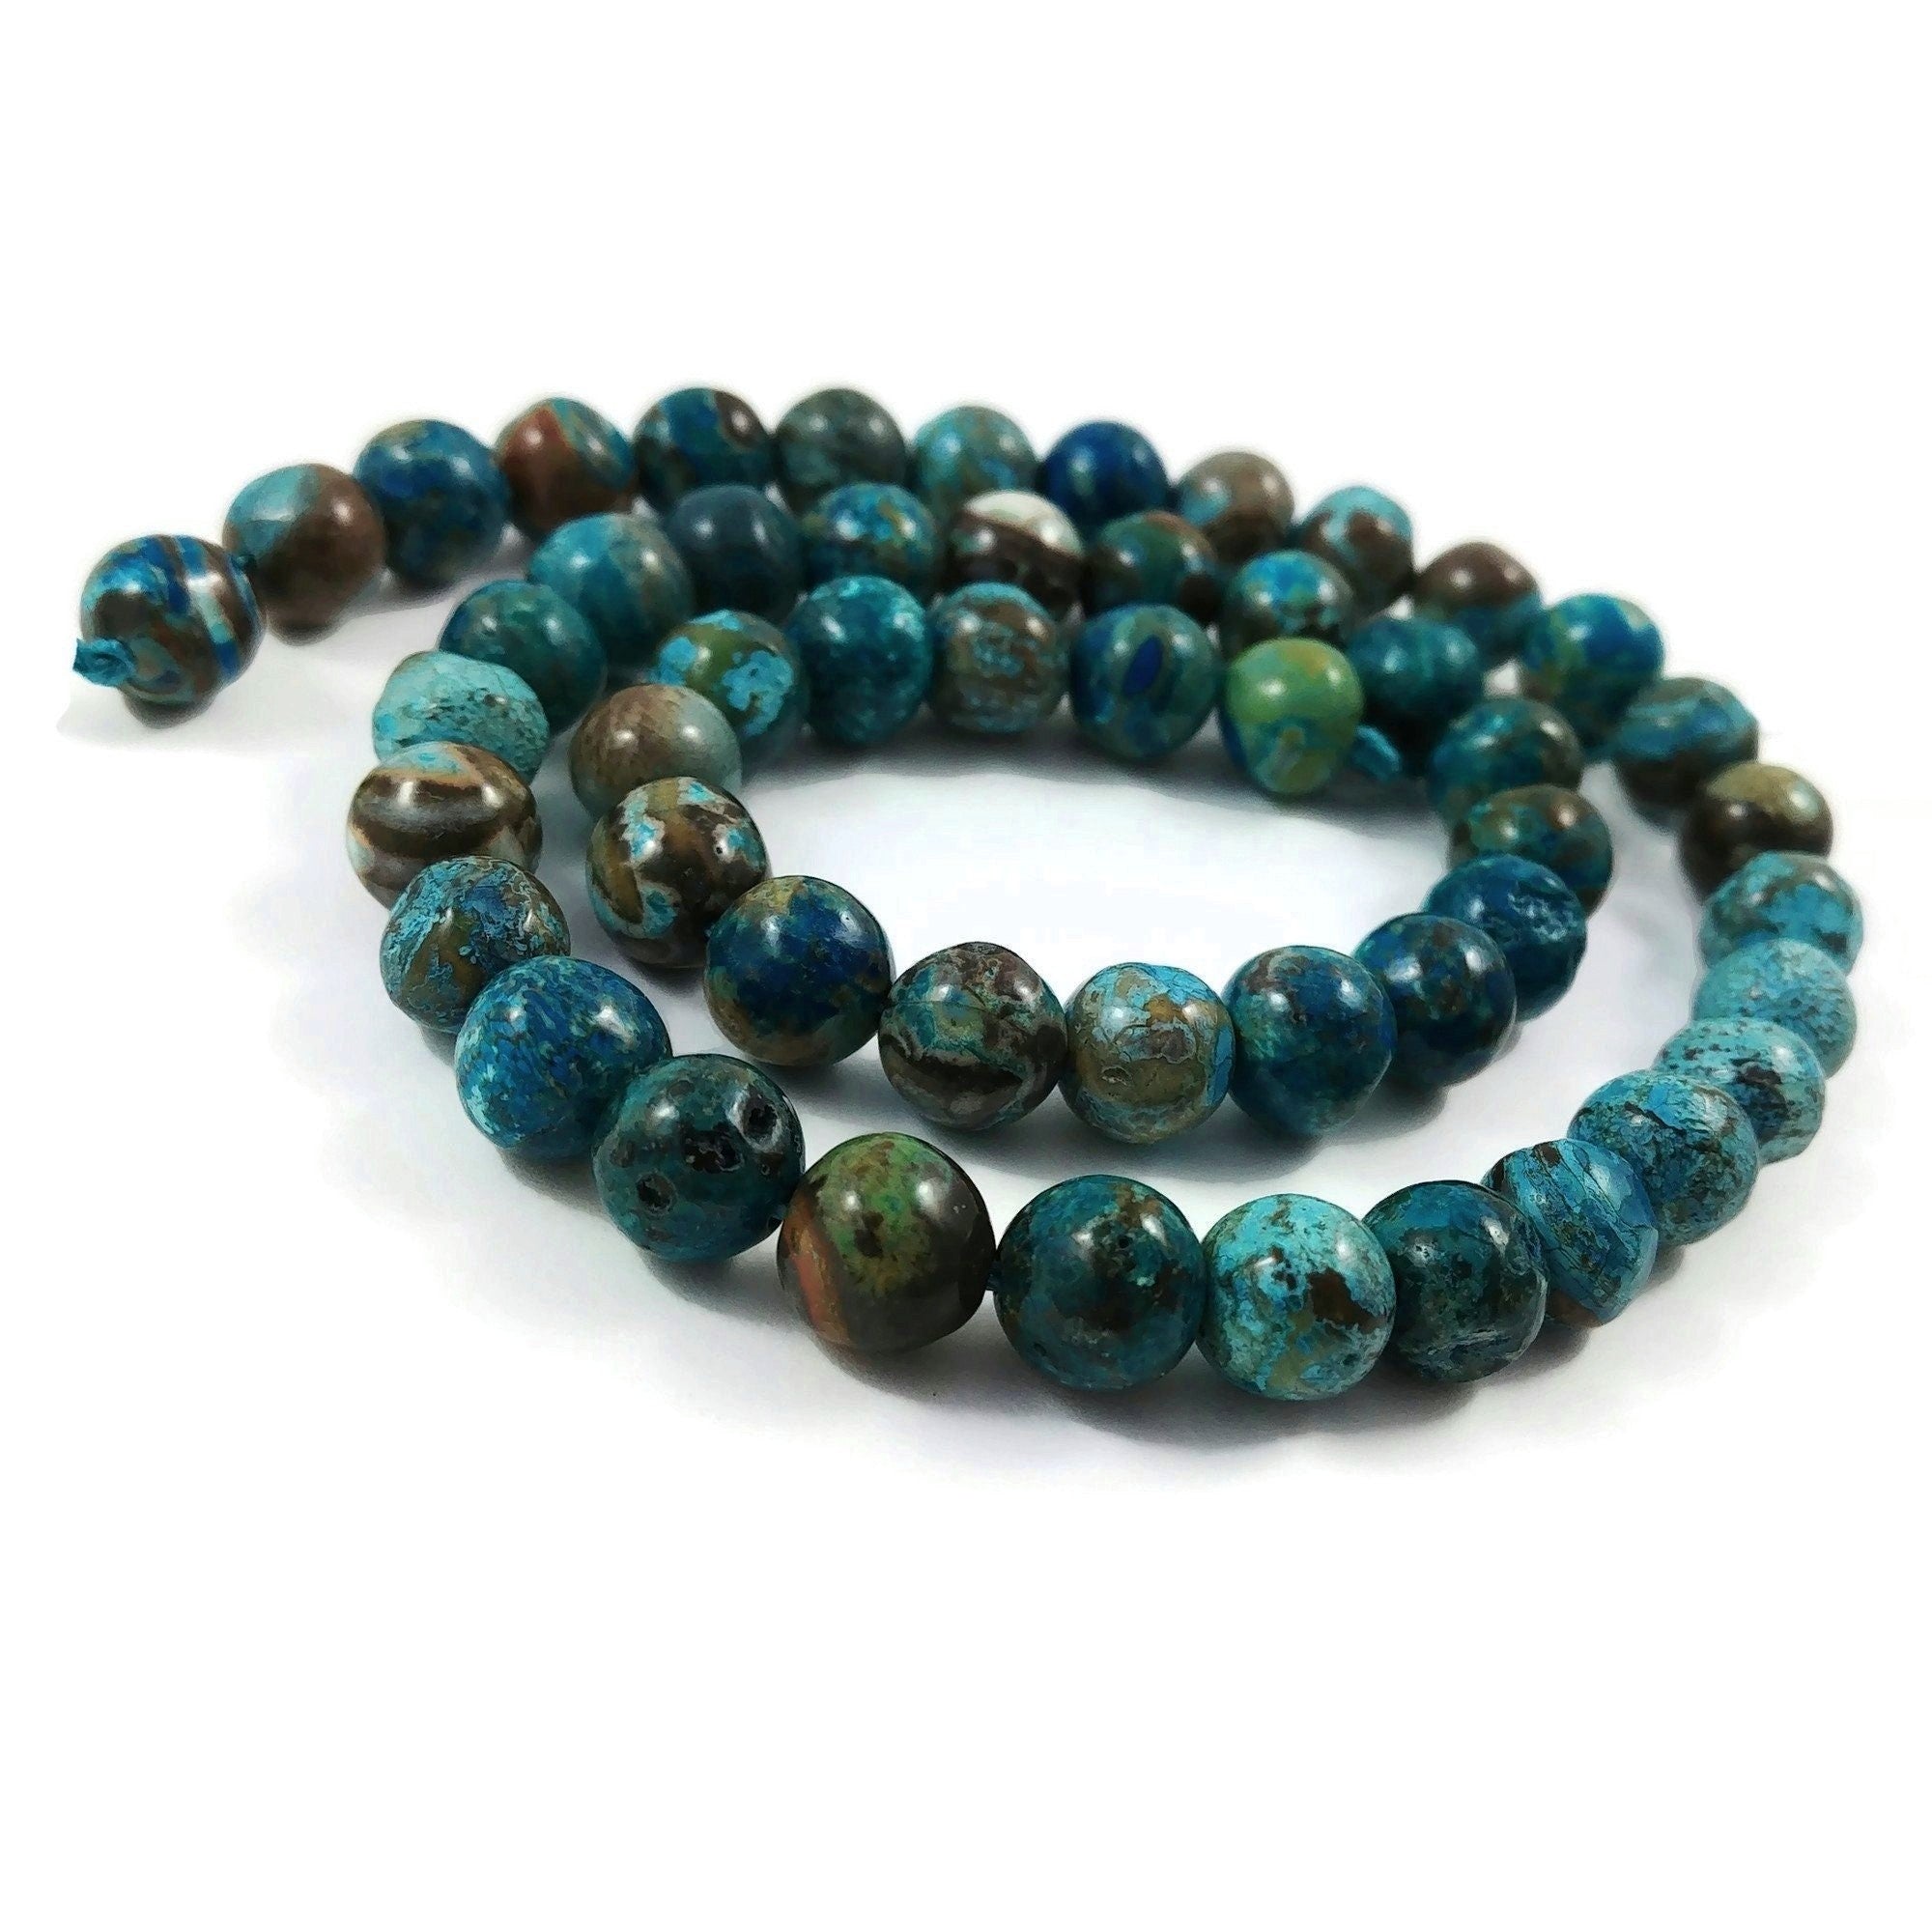 8mm emerald green ocean jasper beads